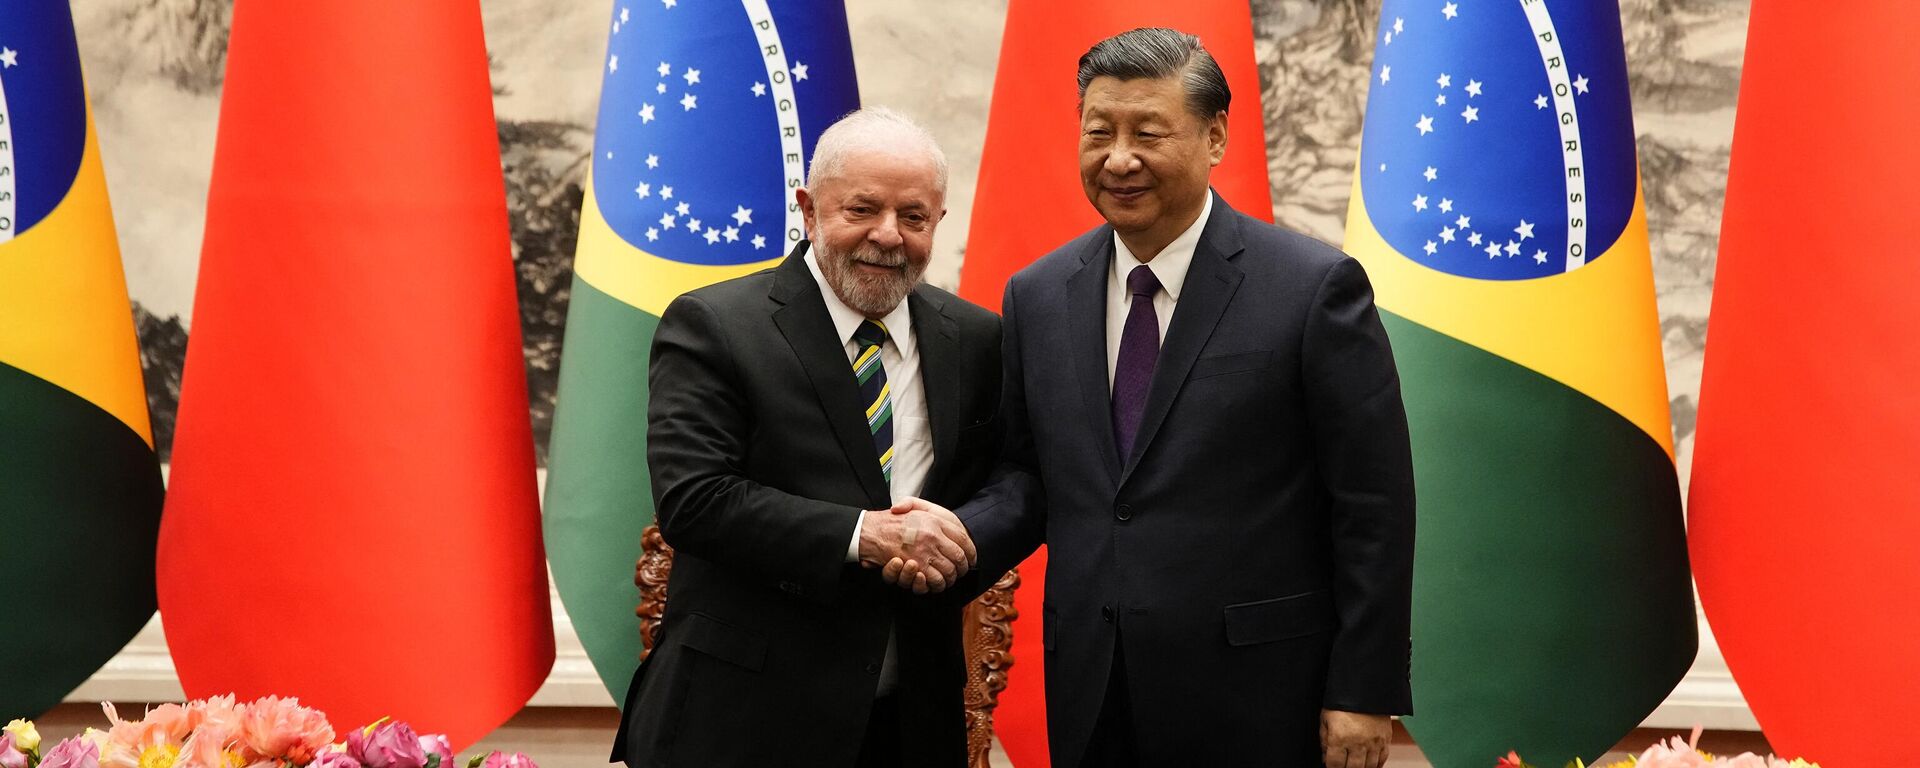 O presidente chinês Xi Jinping (R) e o presidente brasileiro Luiz Inácio Lula da Silva apertam as mãos após uma cerimônia de assinatura no Grande Salão do Povo em Pequim em 14 de abril de 2023 - Sputnik Brasil, 1920, 14.04.2023